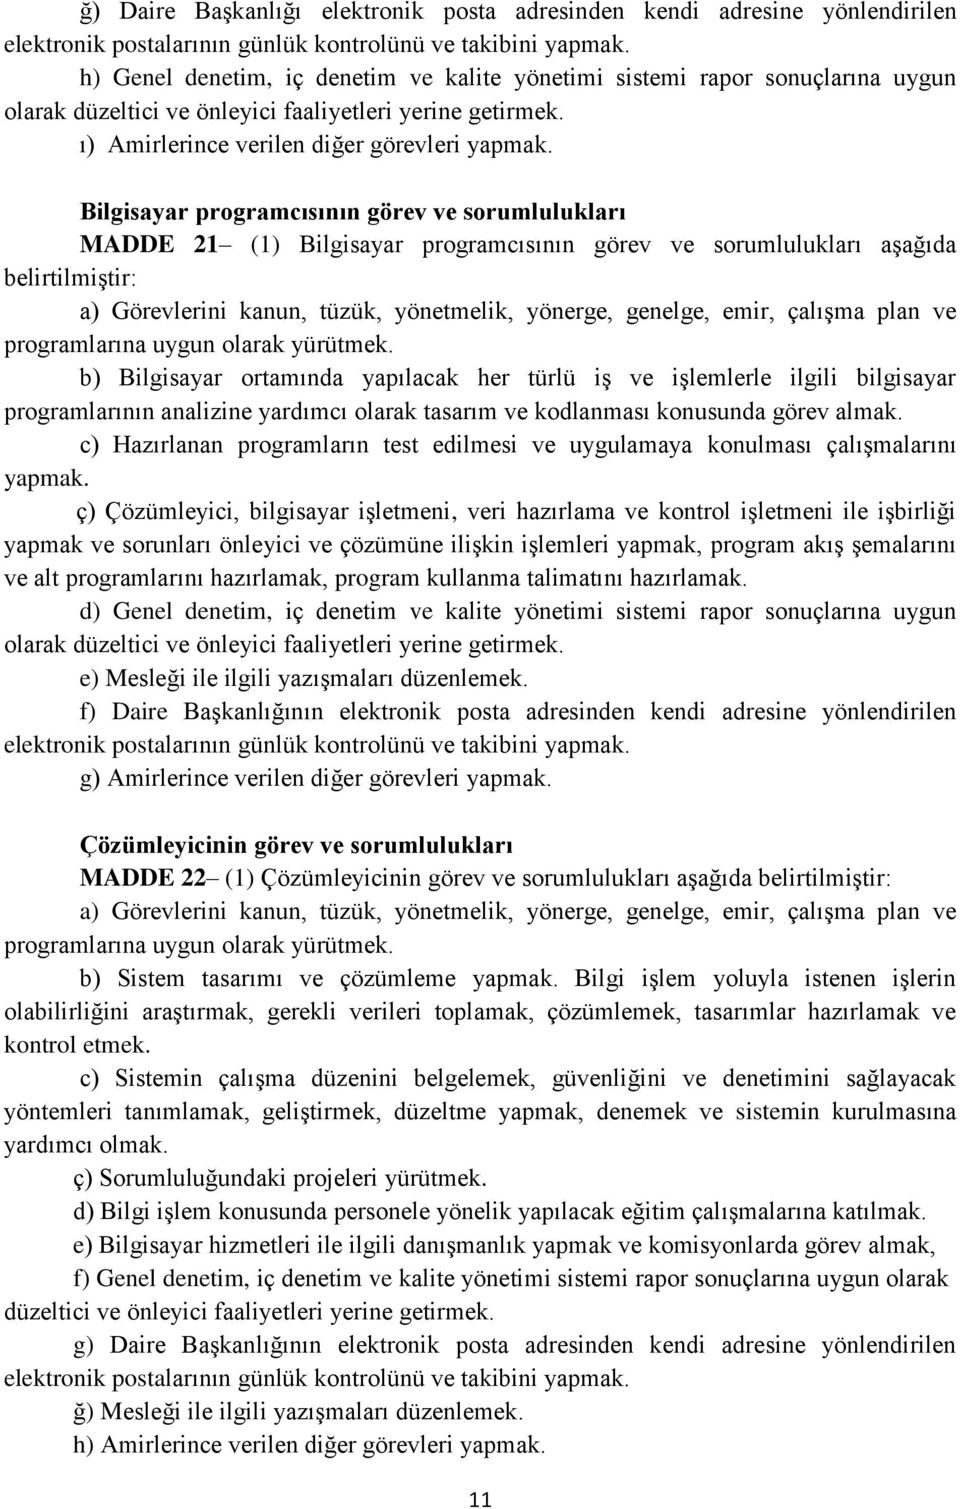 Bilgisayar programcısının görev ve sorumlulukları MADDE 21 (1) Bilgisayar programcısının görev ve sorumlulukları aşağıda belirtilmiştir: b) Bilgisayar ortamında yapılacak her türlü iş ve işlemlerle